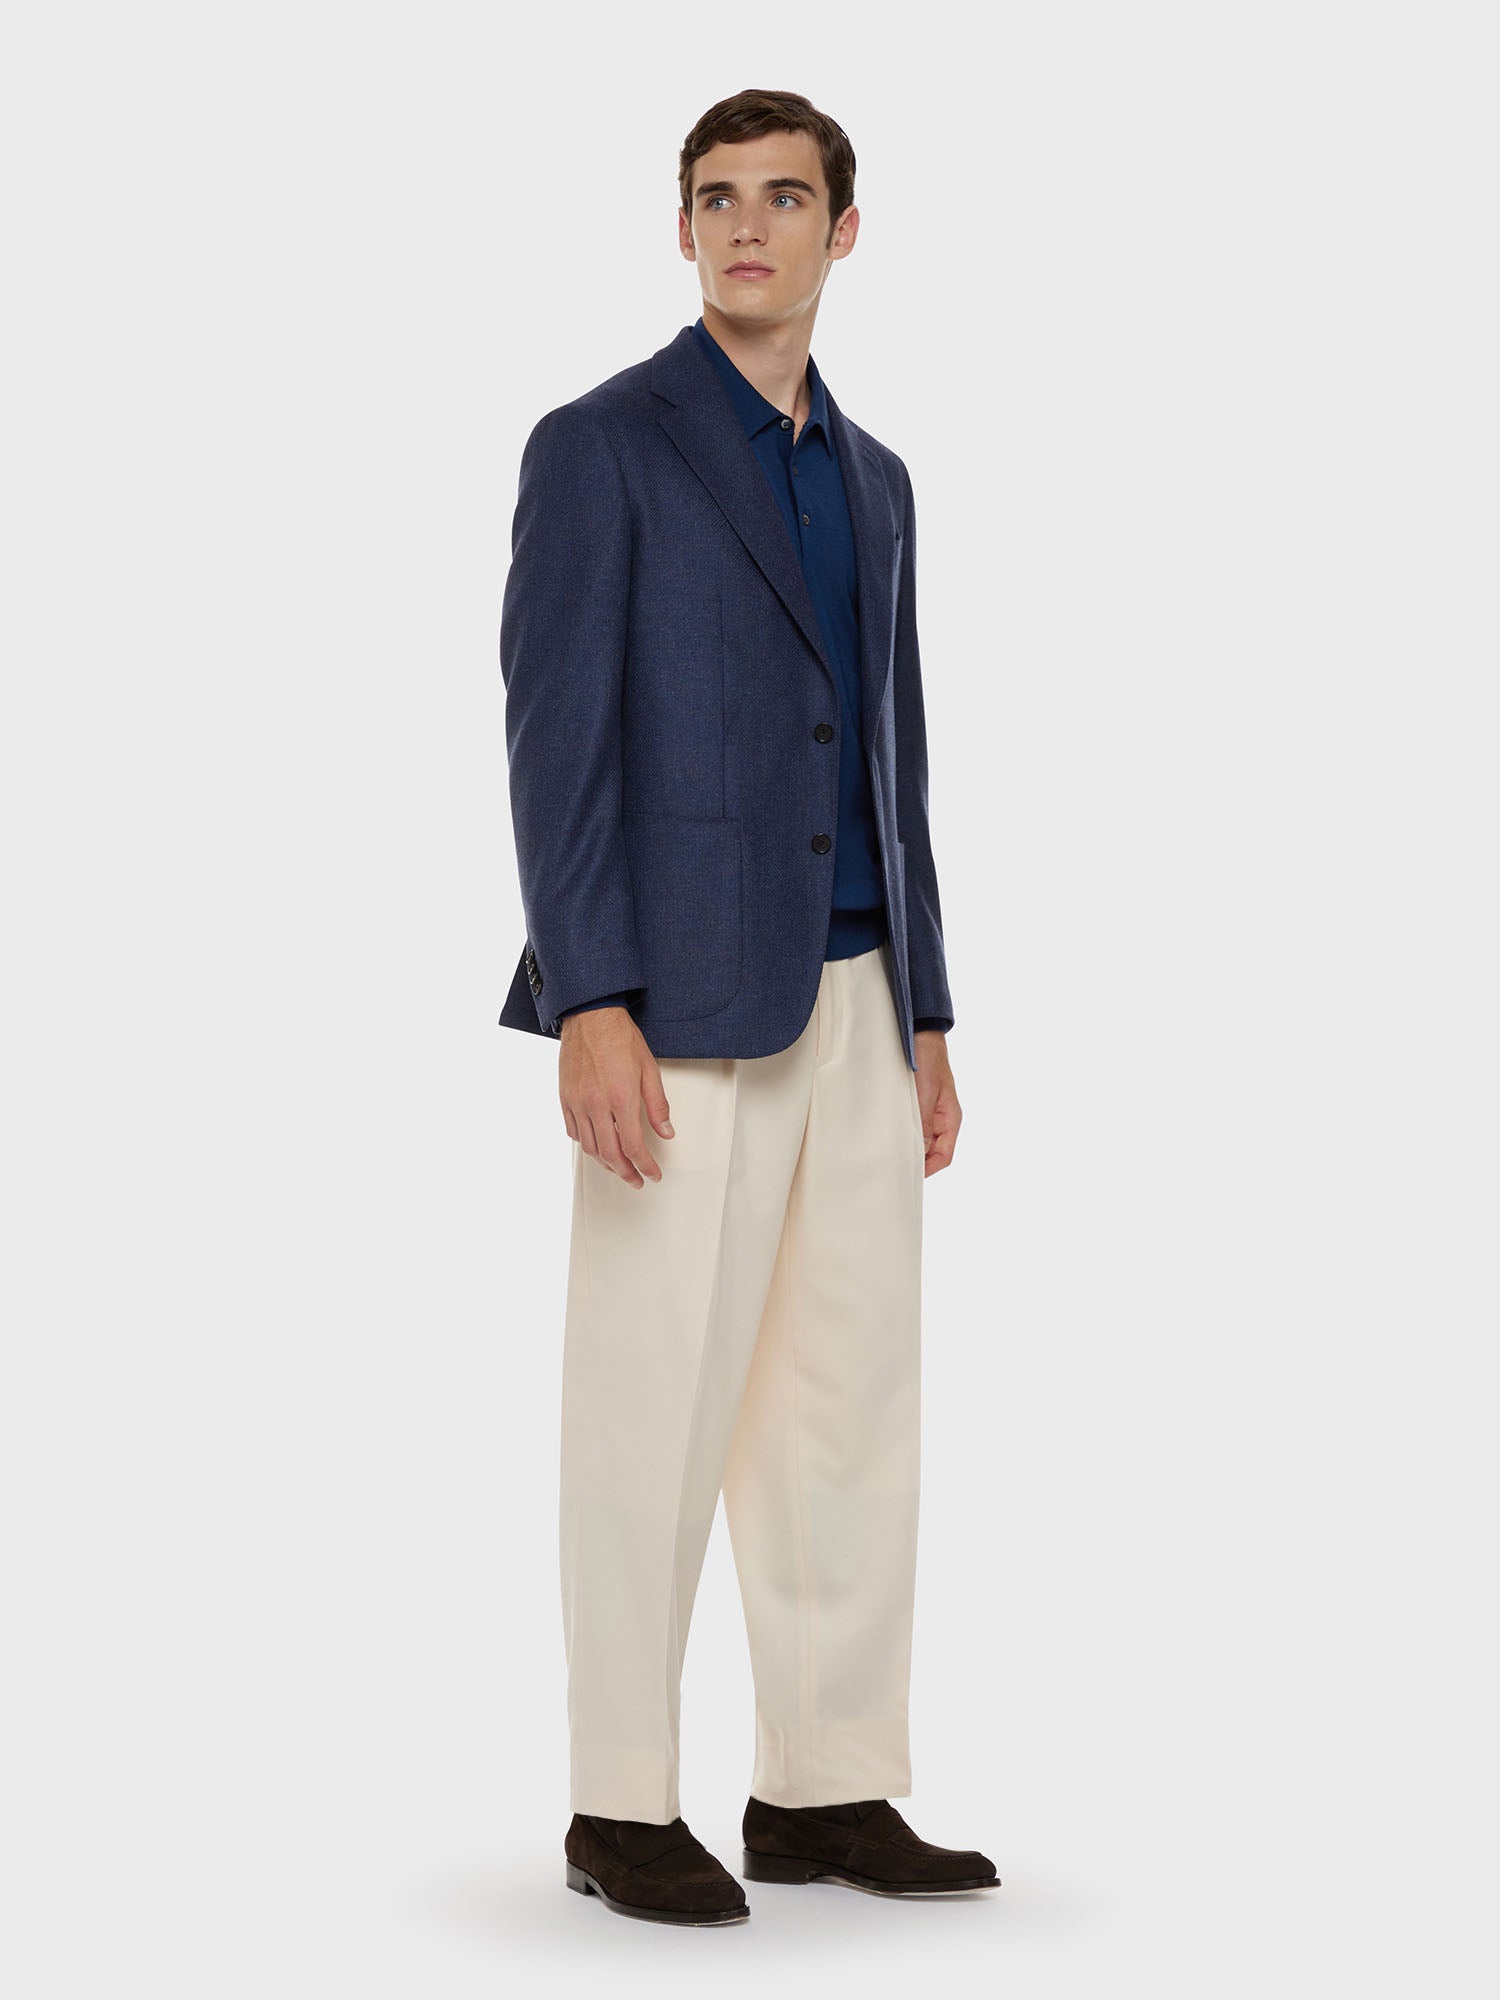 Caruso Menswear Abbigliamento Maglieria Uomo Polo a maniche lunghe in lana, seta e cashmere blu total look